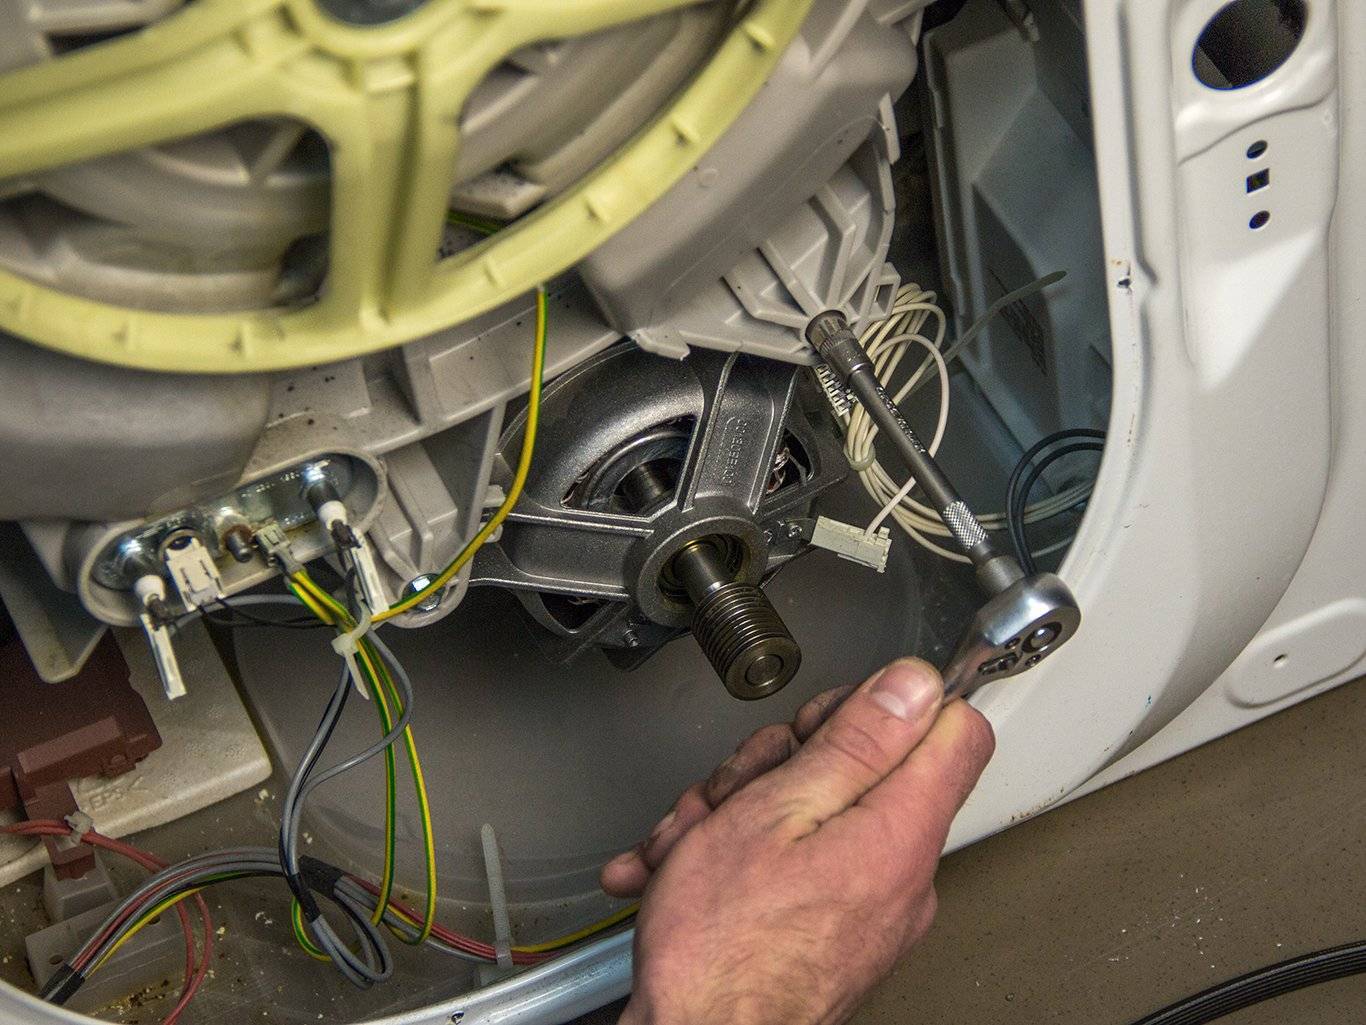 Как проверить двигатель стиральной машины: прозвонить и отремонтировать мотор, видео, коллекторный электродвигатель